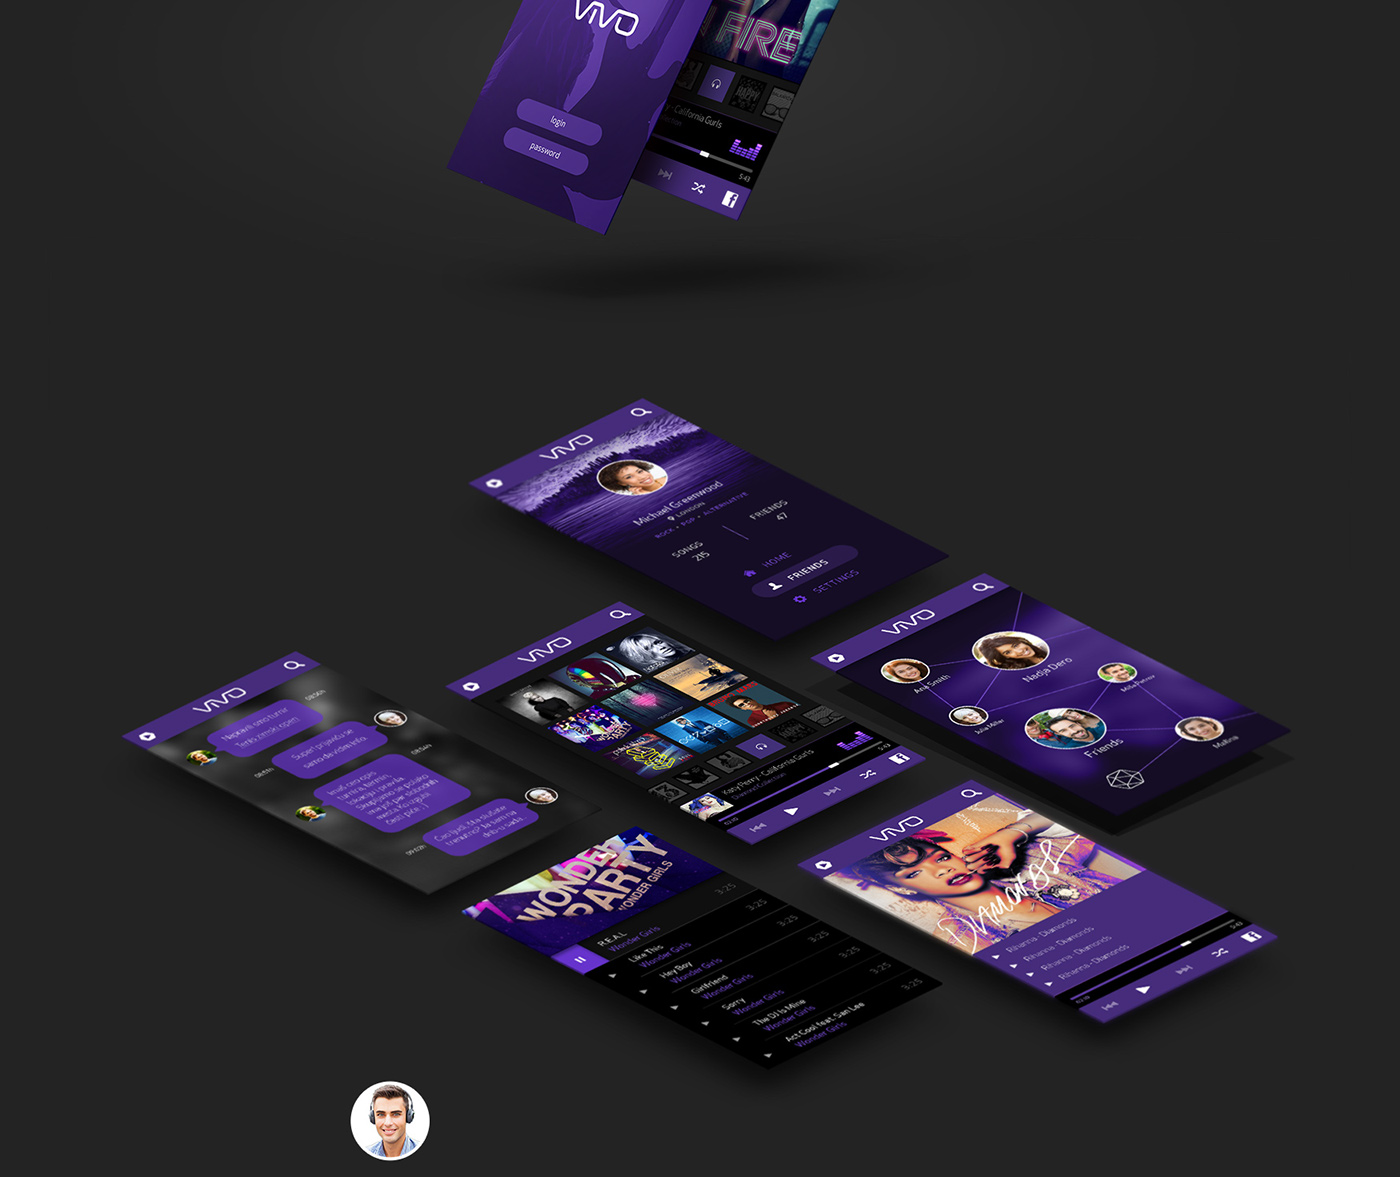 social network mobile tablet app Interface violet flat dark